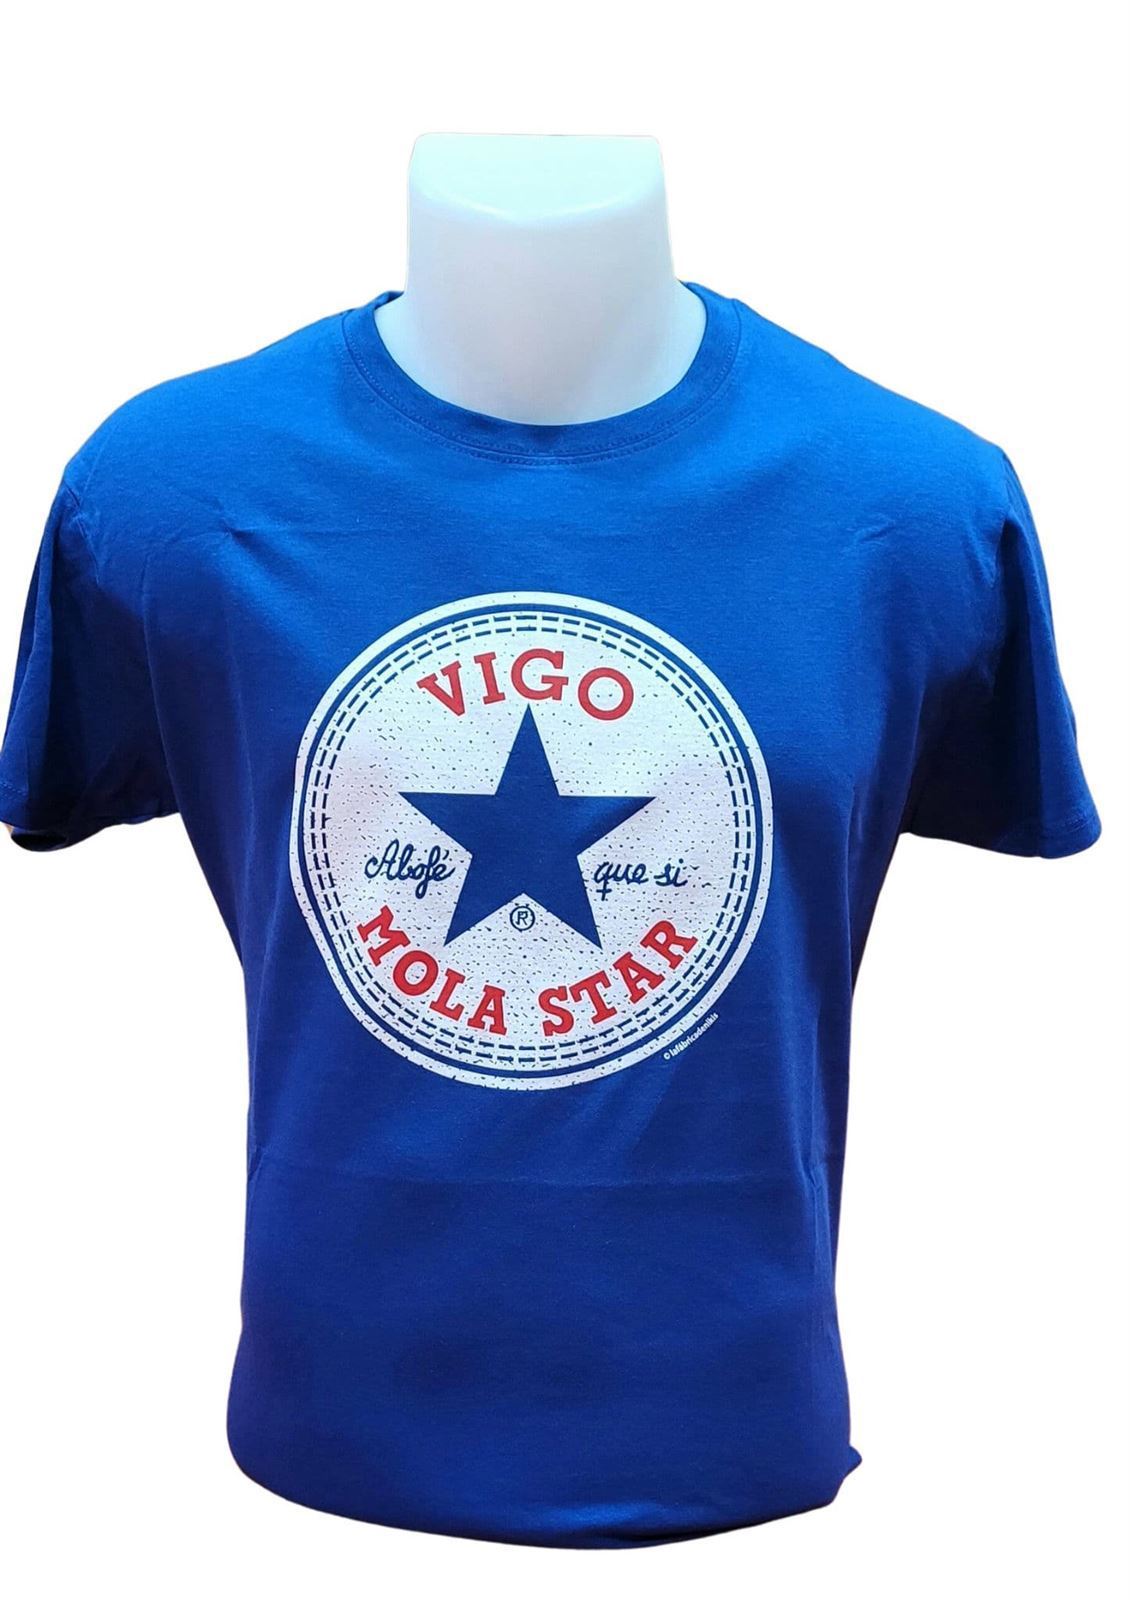 Camiseta Morriña Vigo Mola Star - Imaxe 1